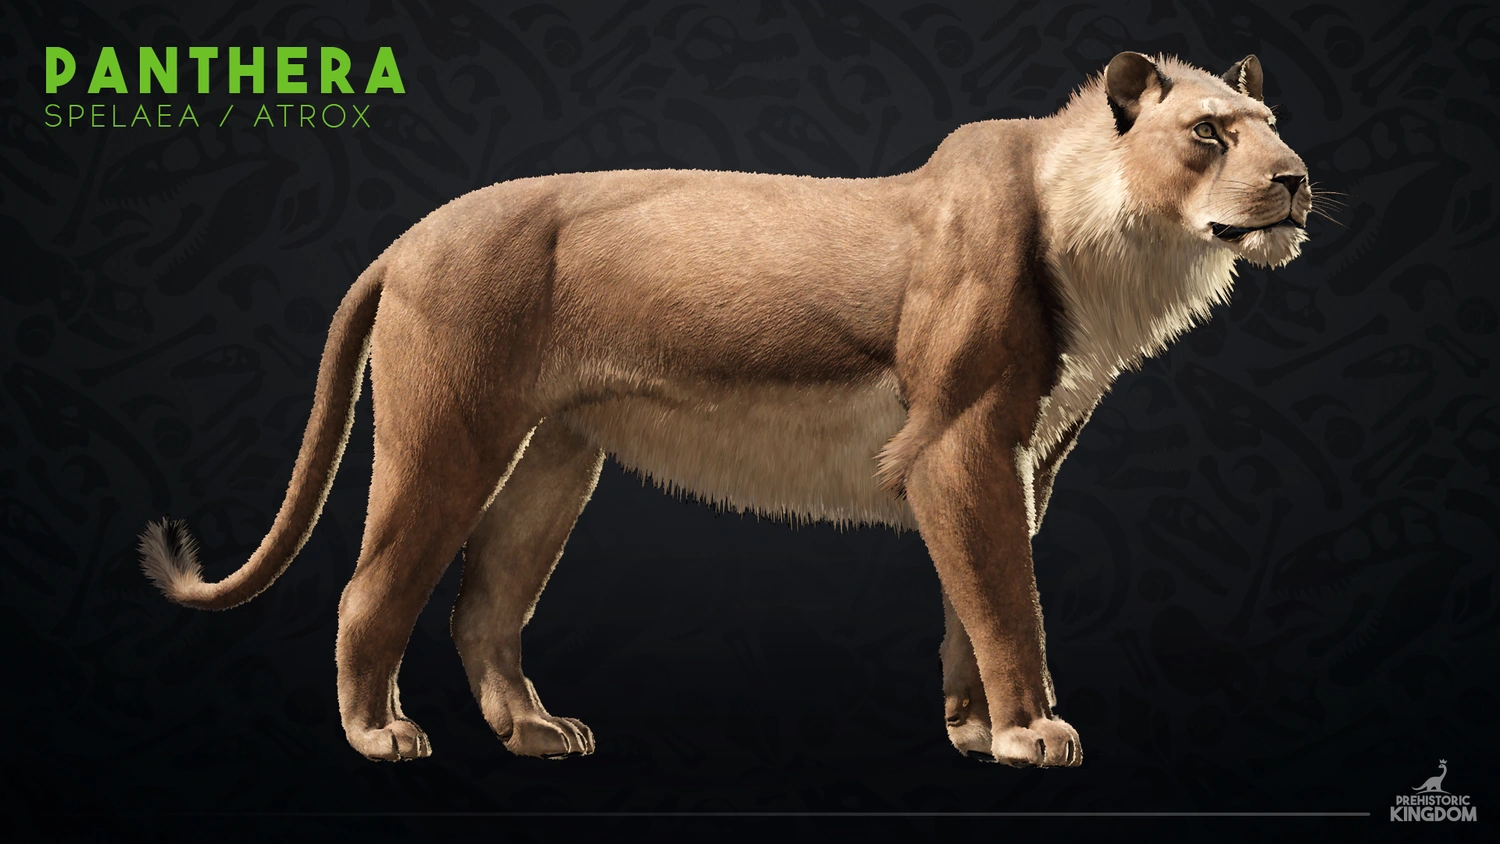 Panthera spelaea - Wikipedia